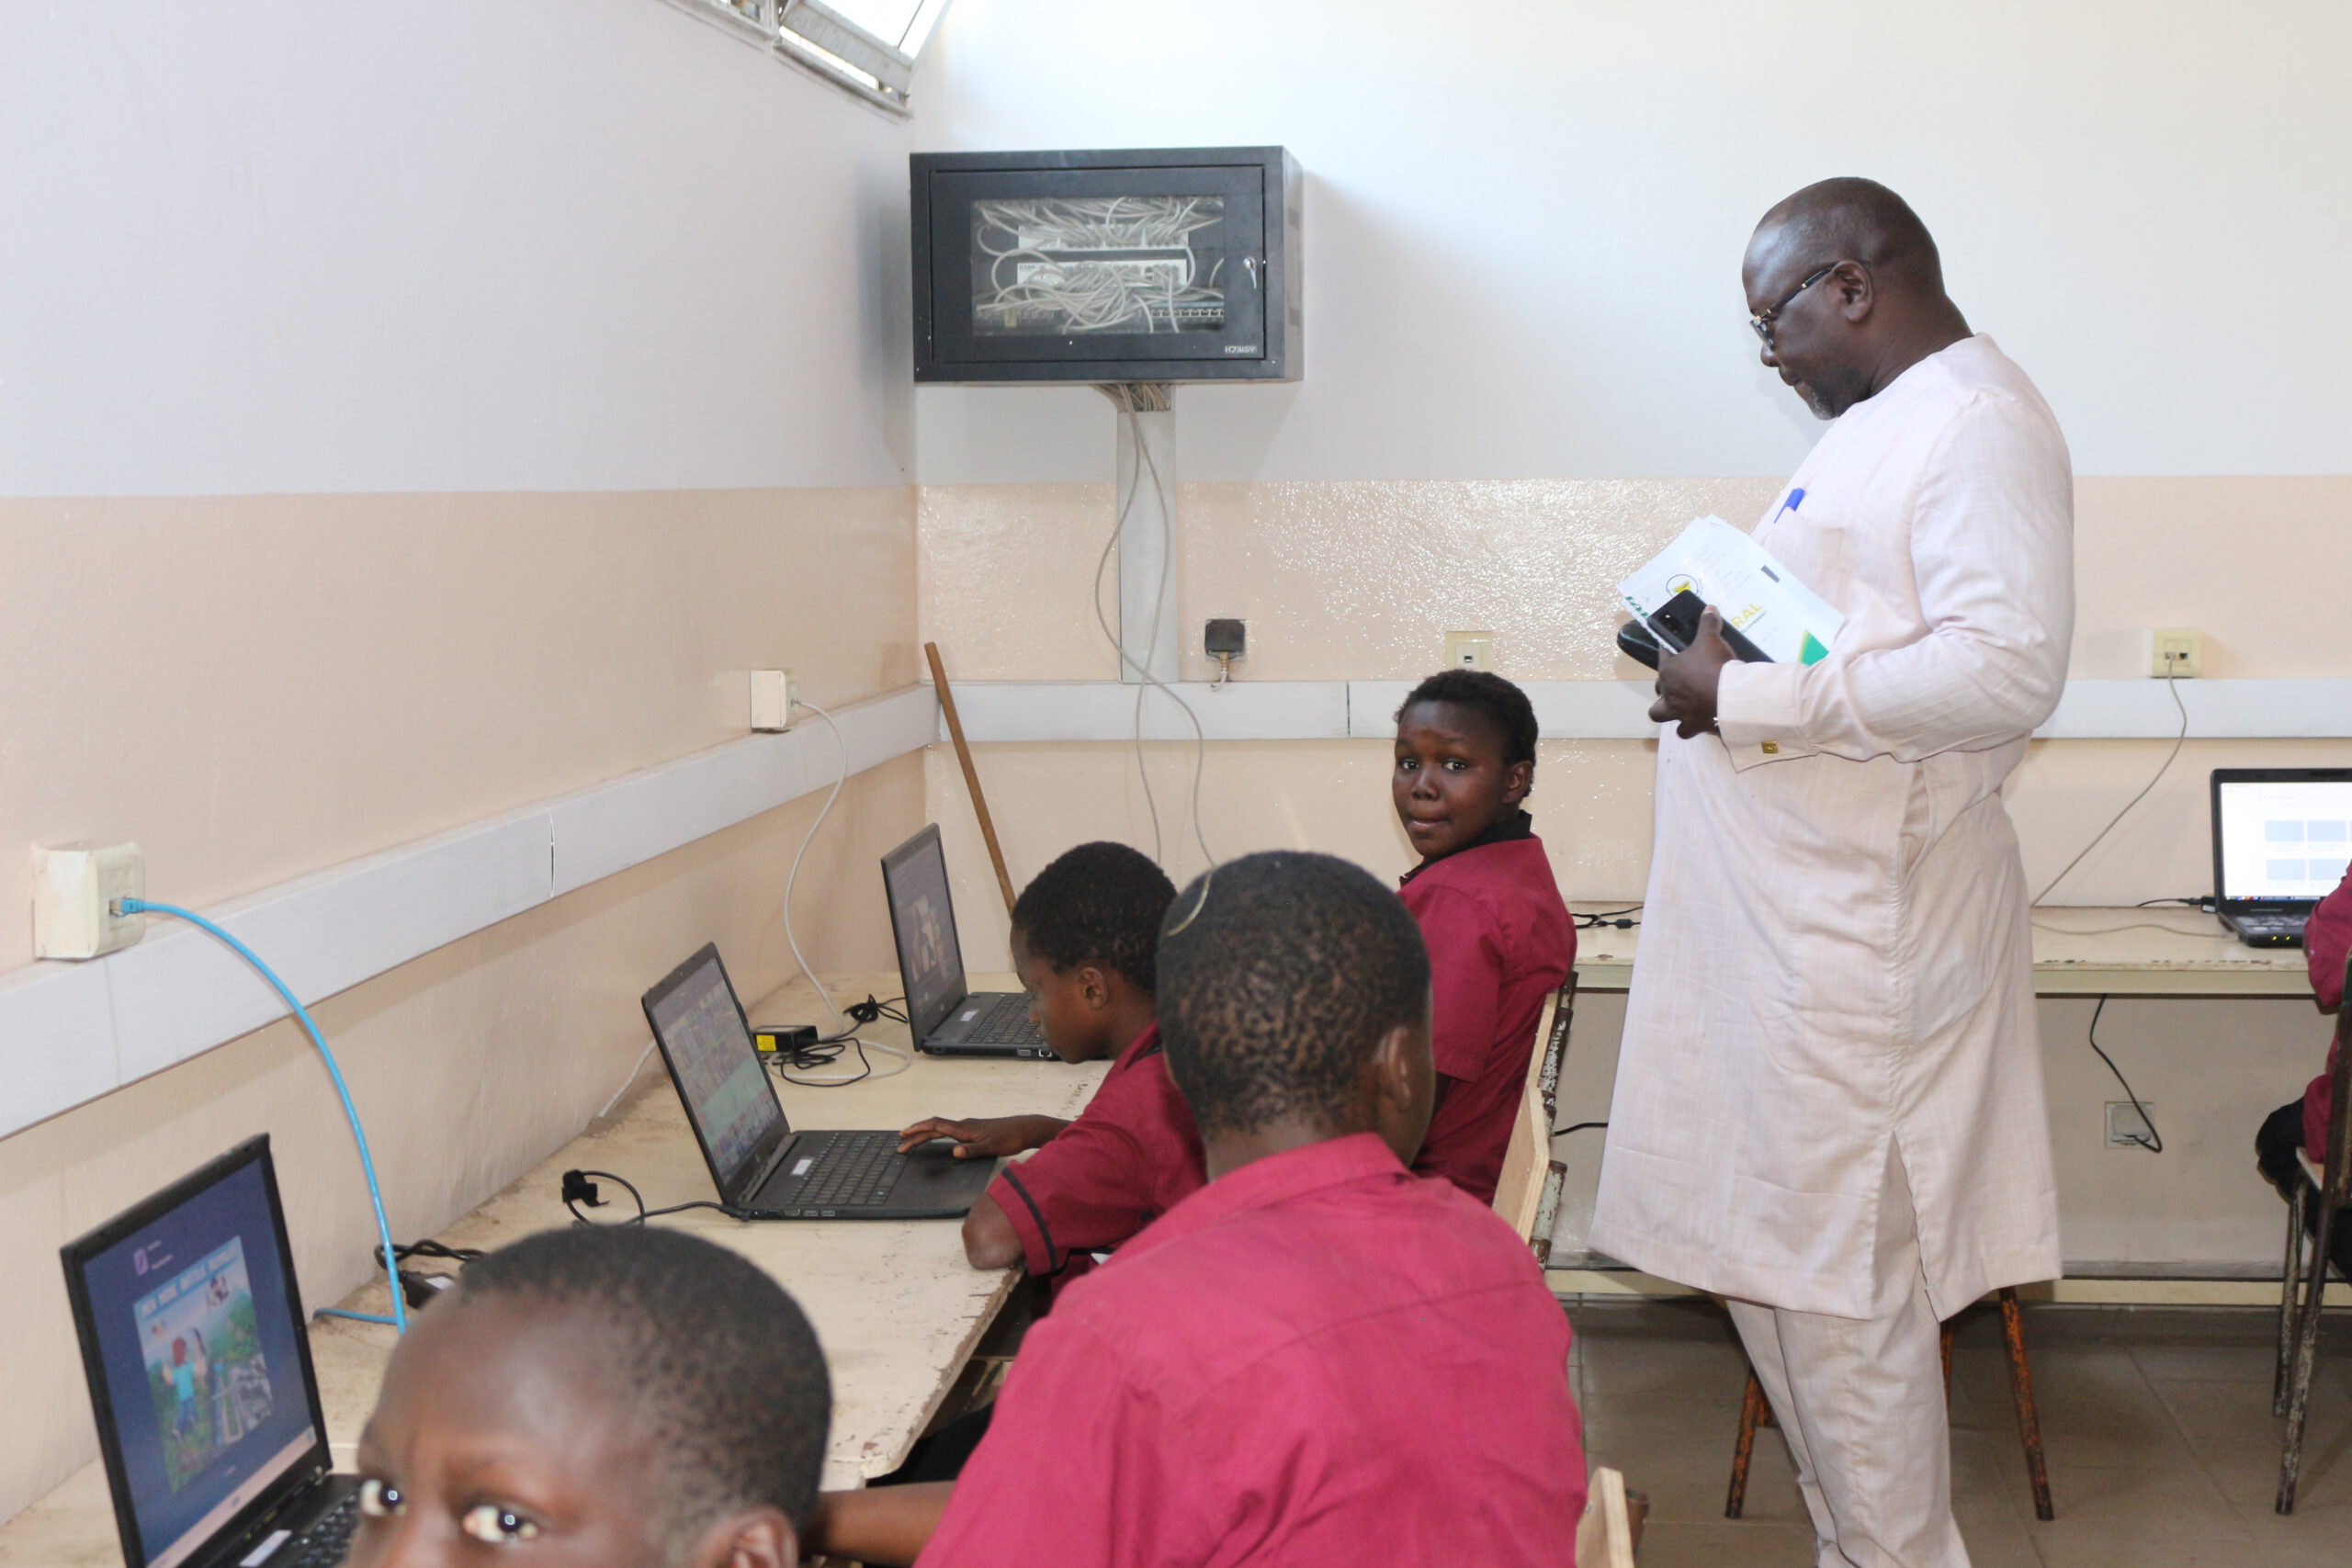 Der Vertreter des Schulministeriums beobachtet Schulkinder am Tag der Einweihung des Computerraumes